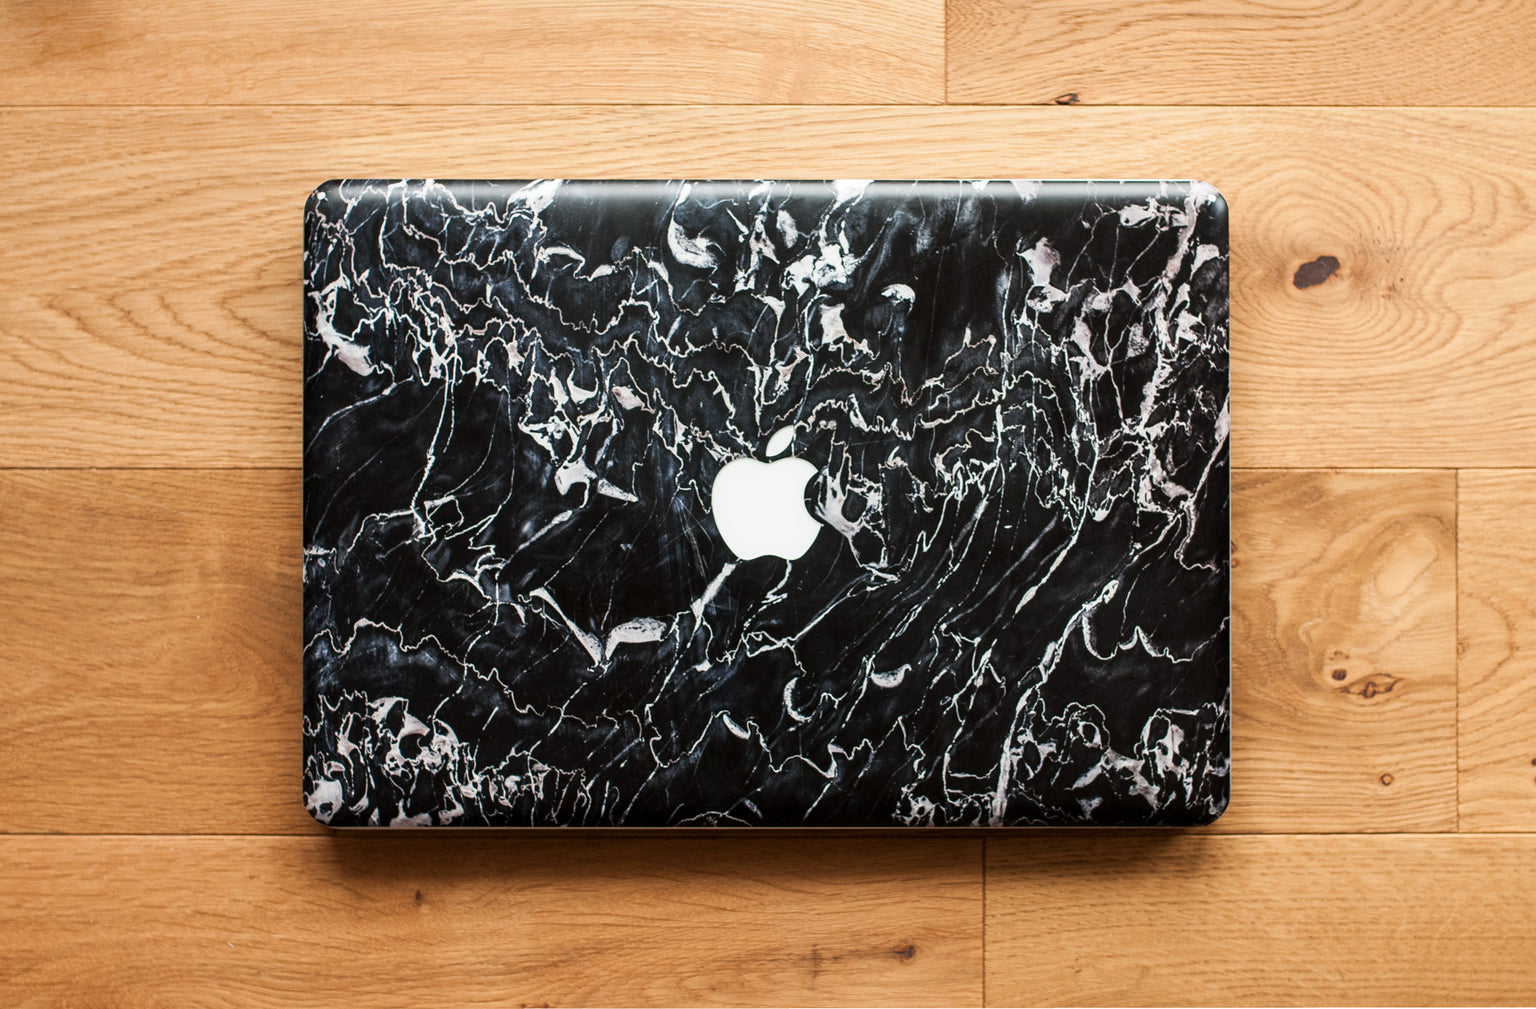 Marsala black marble MacBook skin for top lid